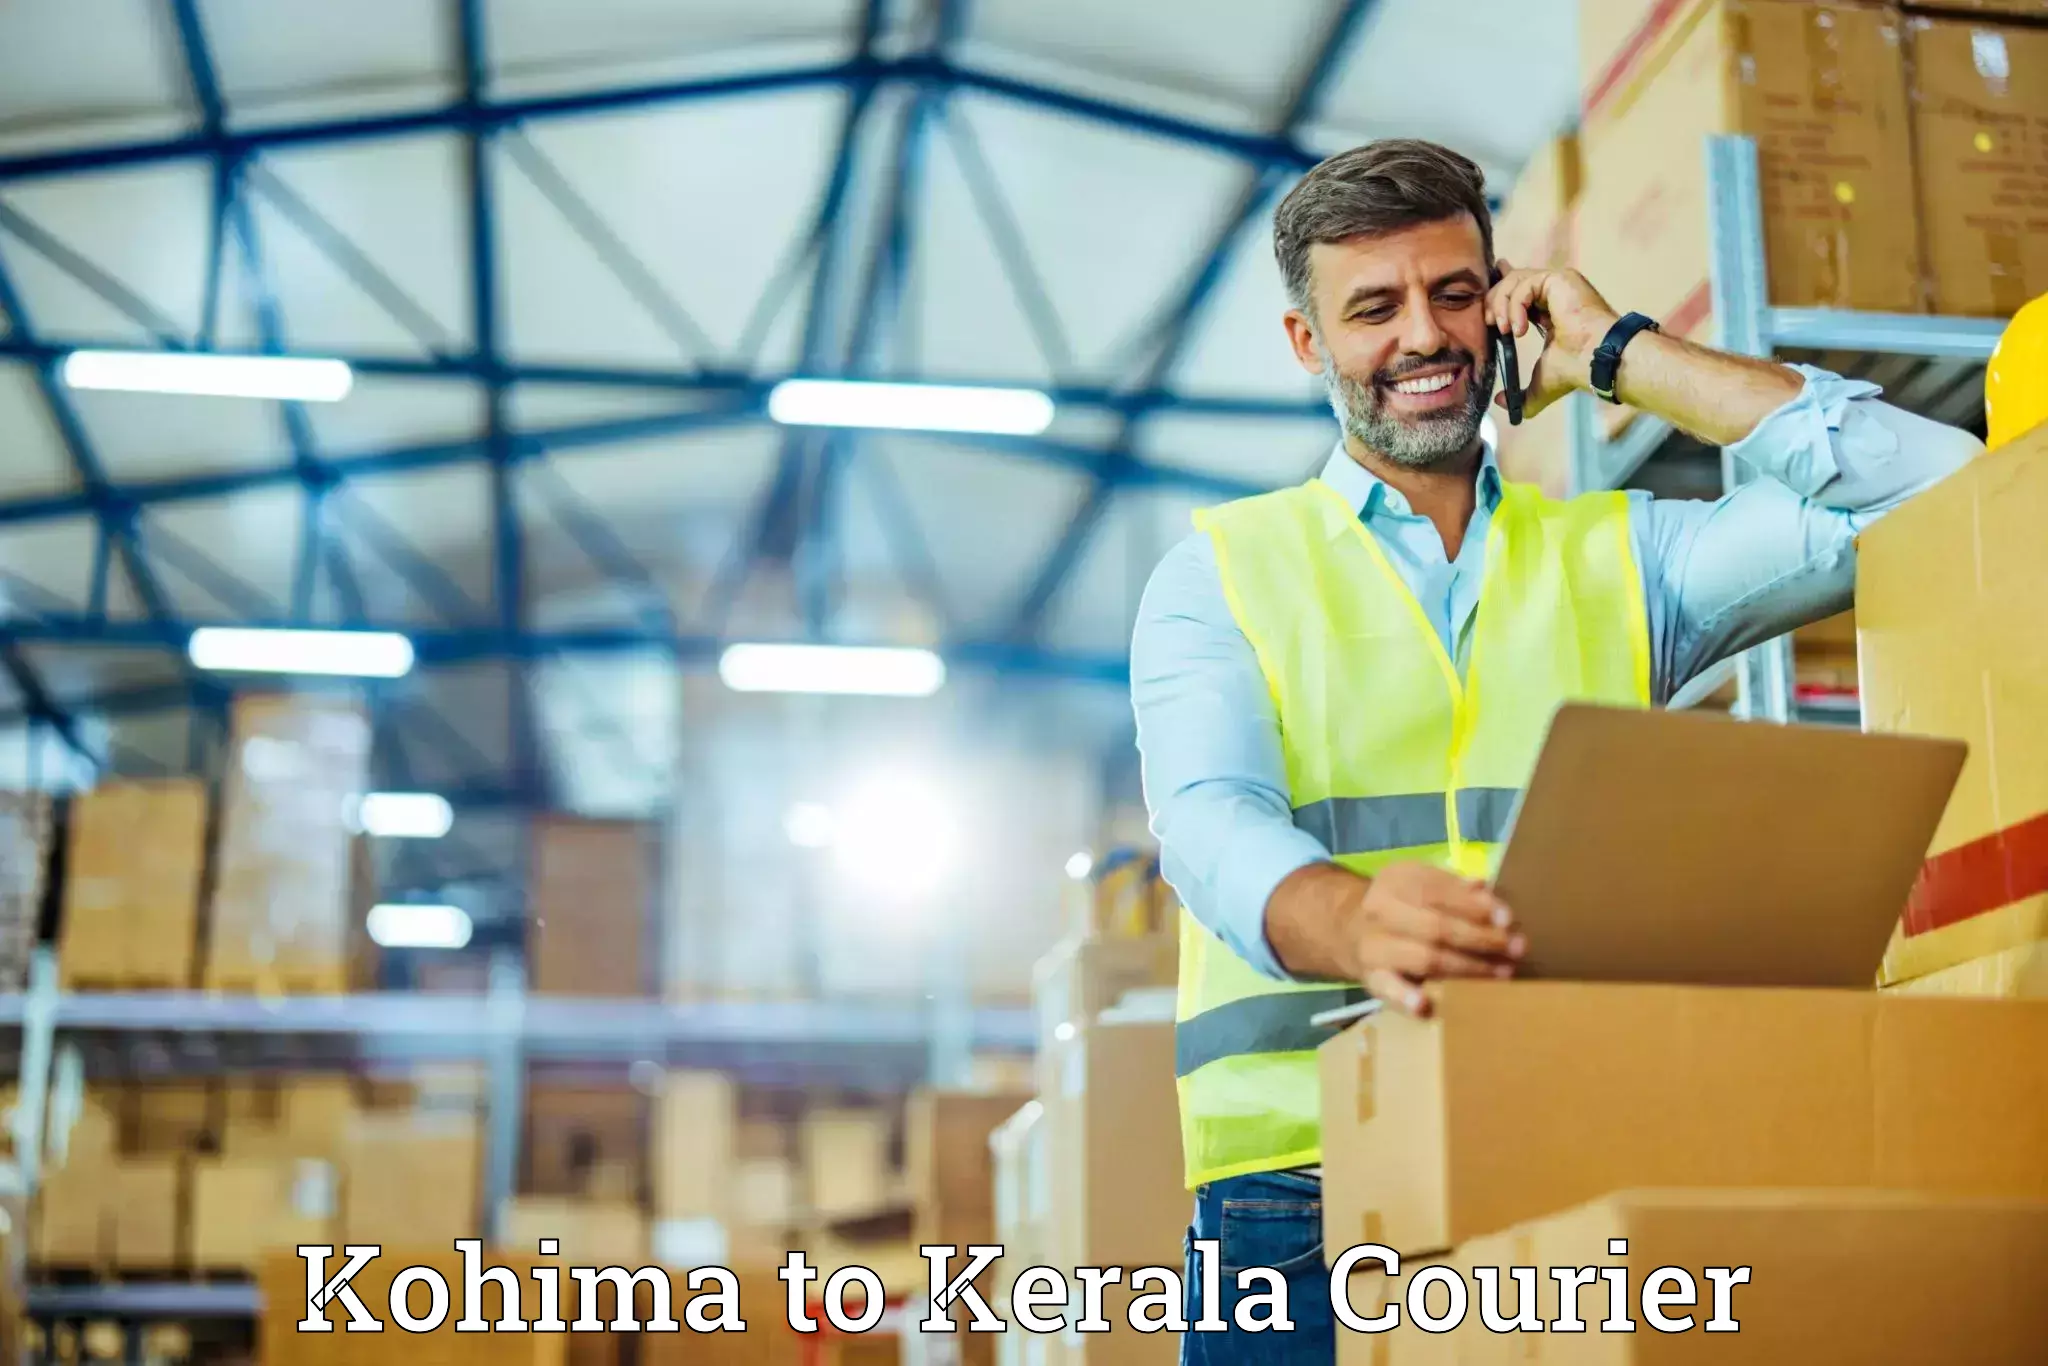 Professional home movers Kohima to Kerala